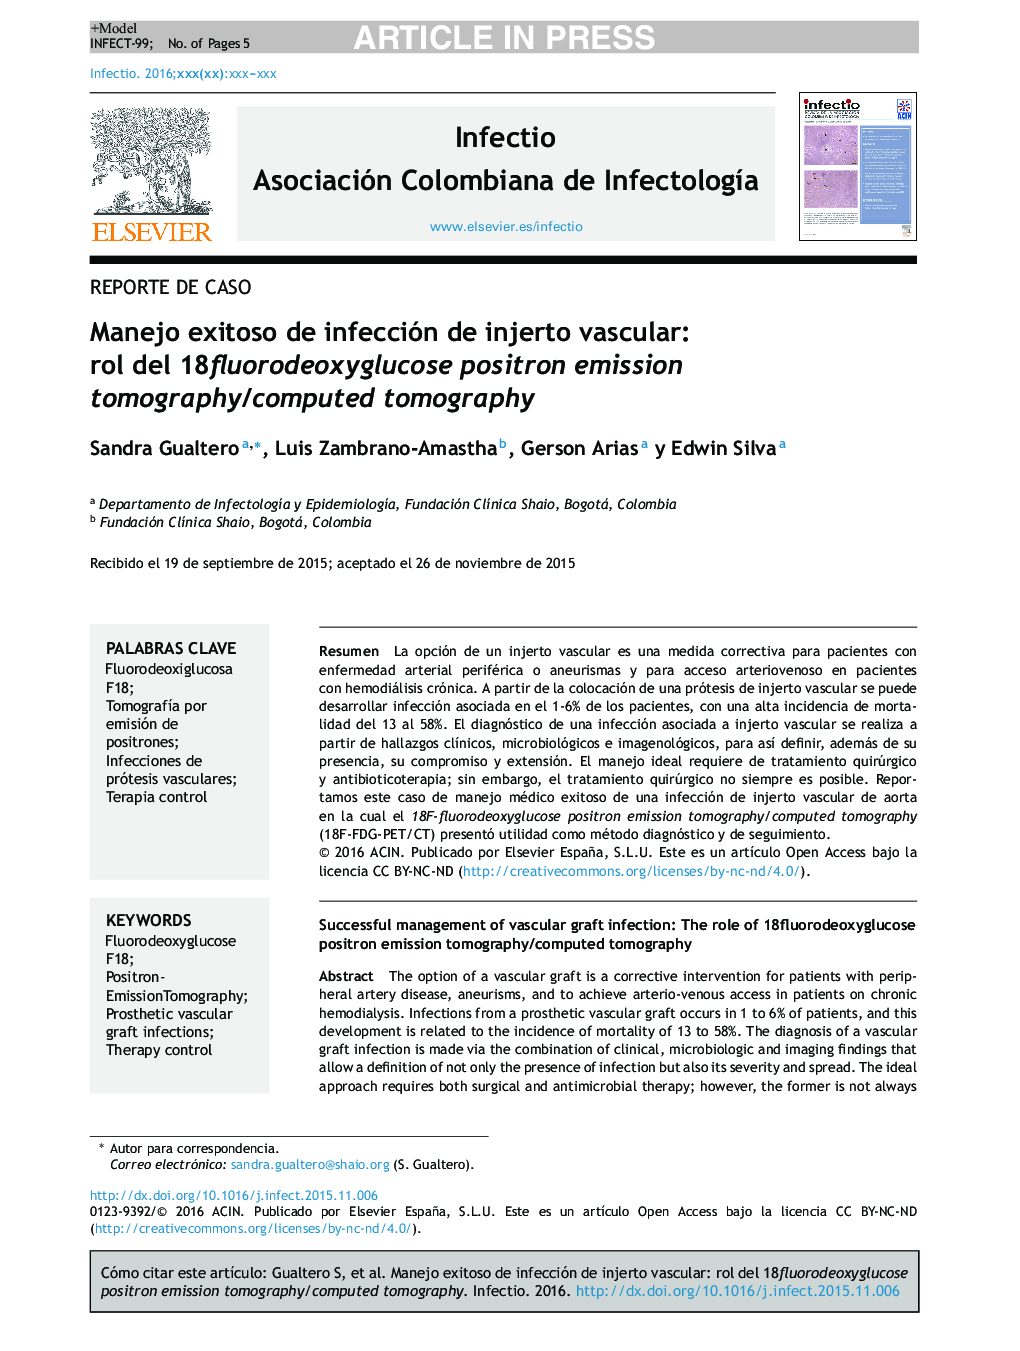 Manejo exitoso de infección de injerto vascular: rol del 18fluorodeoxyglucose positron emission tomography/computed tomography